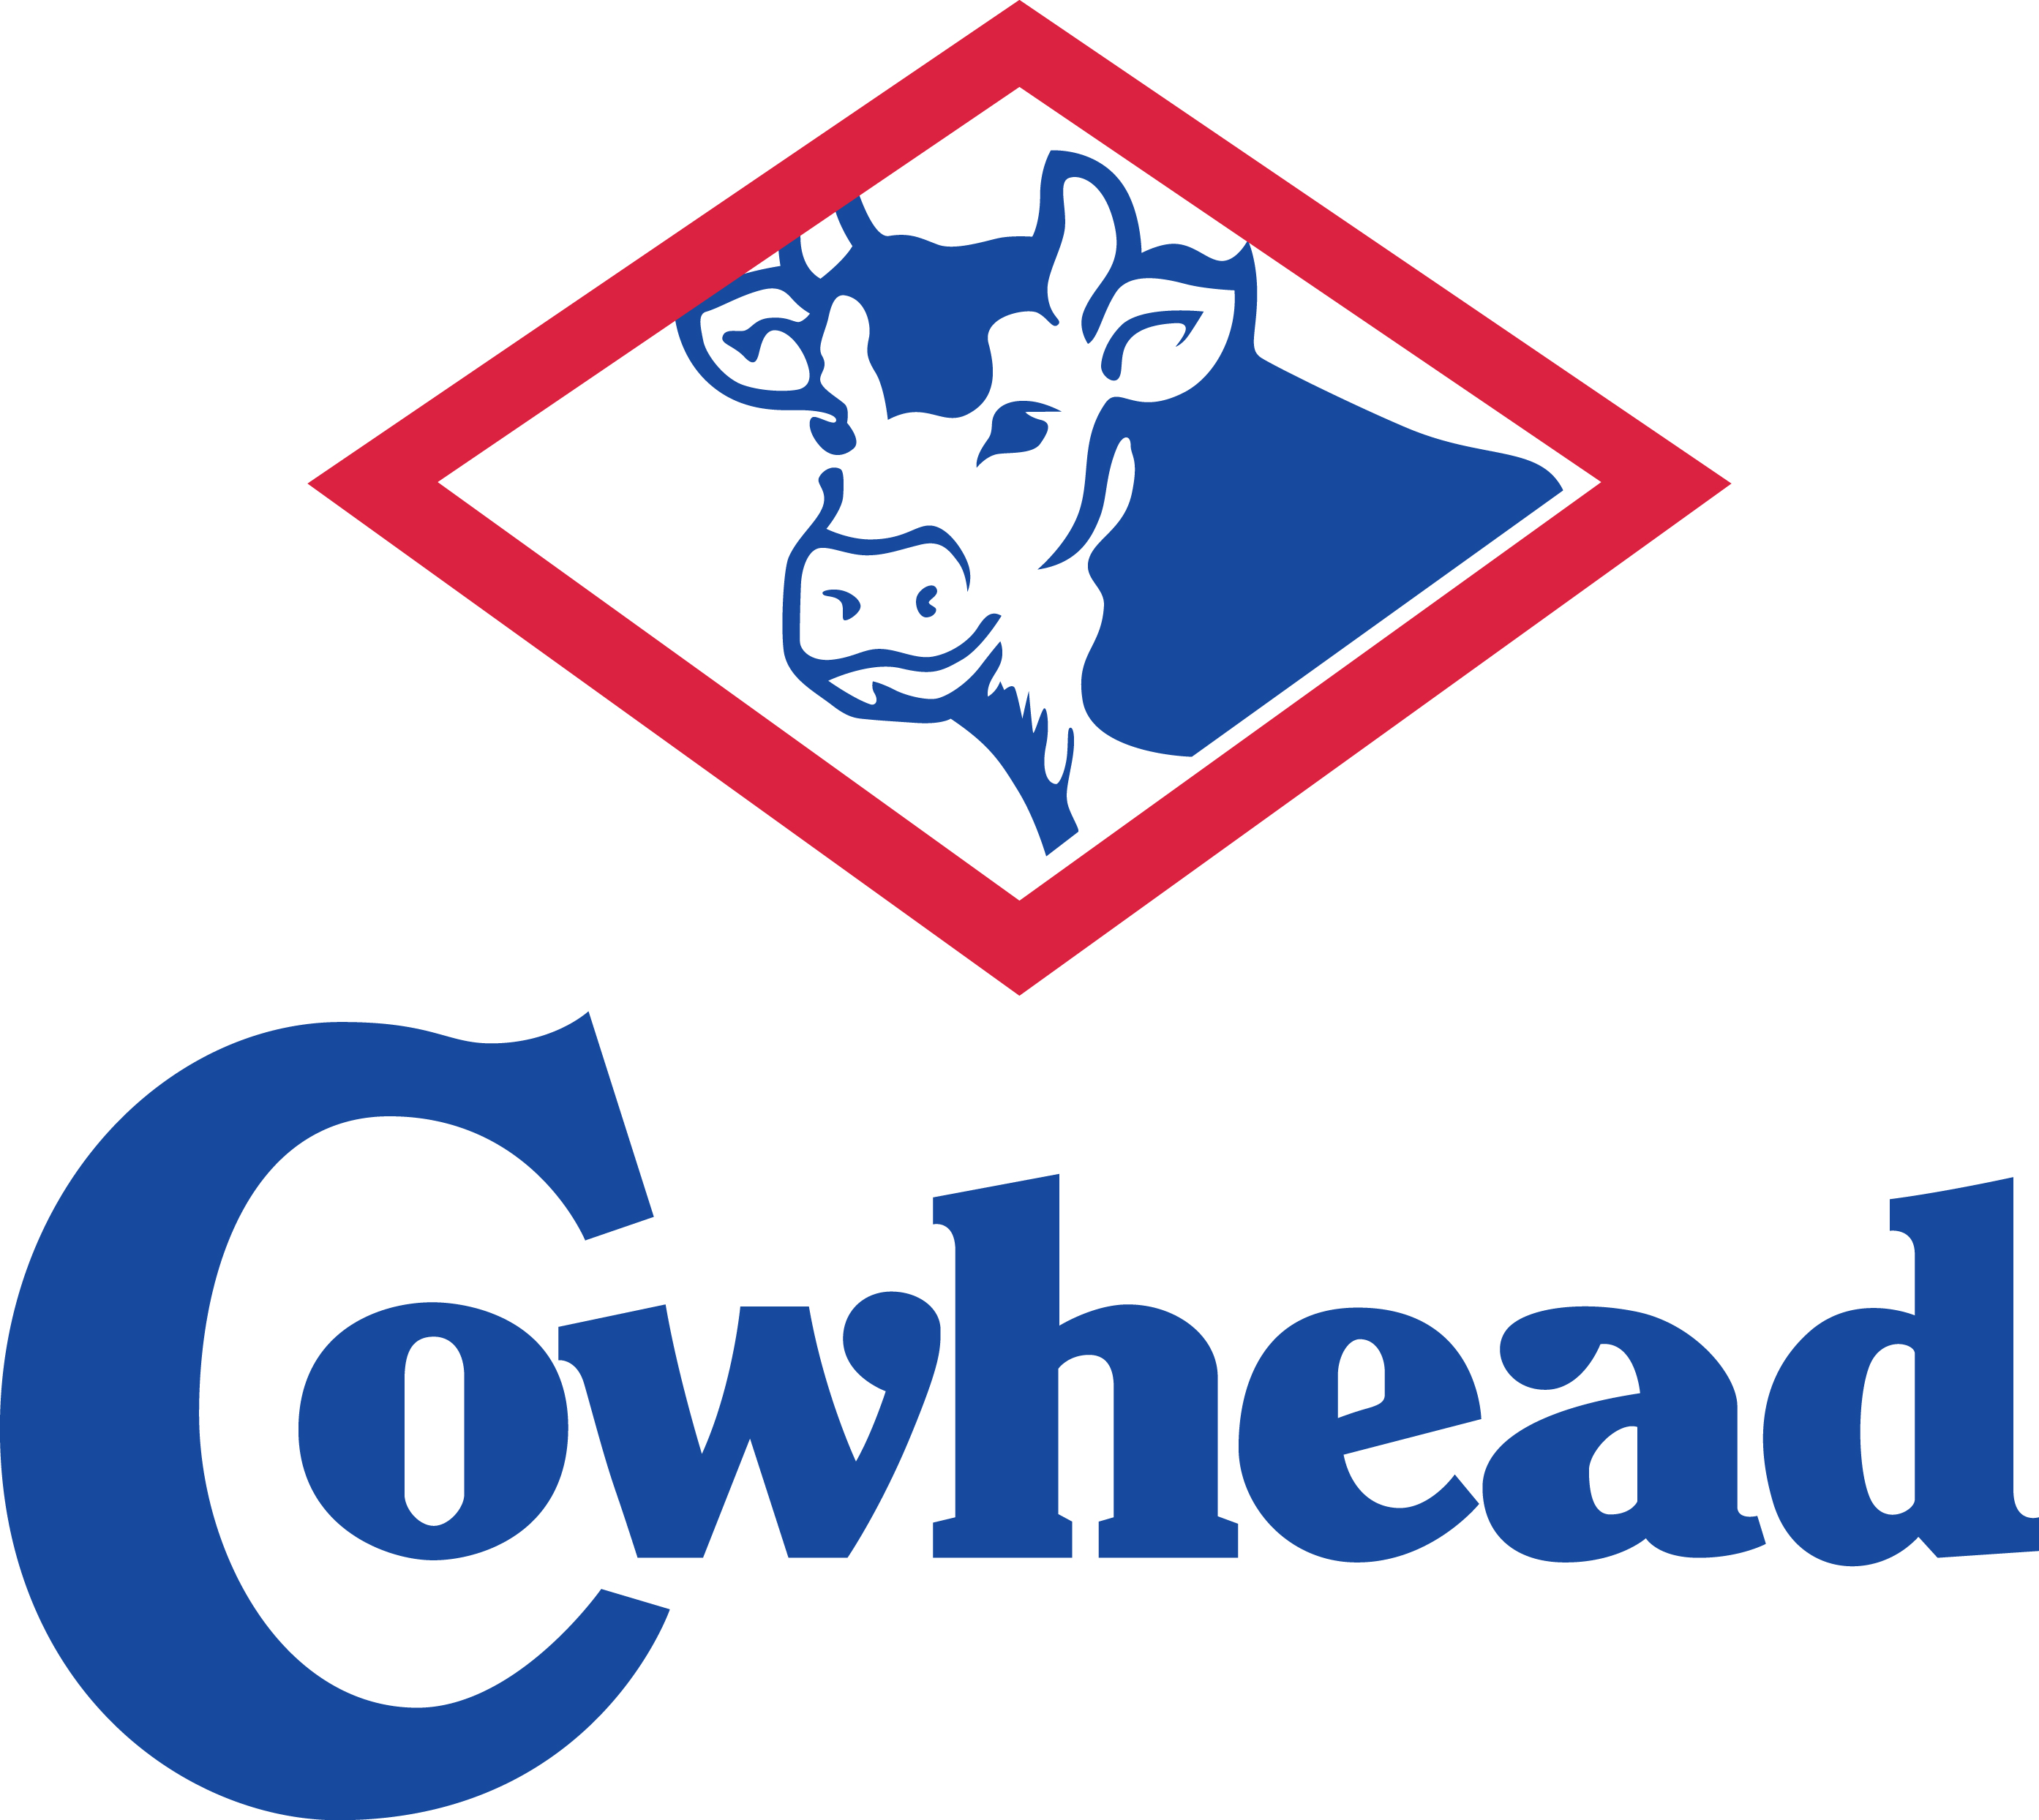 COWHEAD